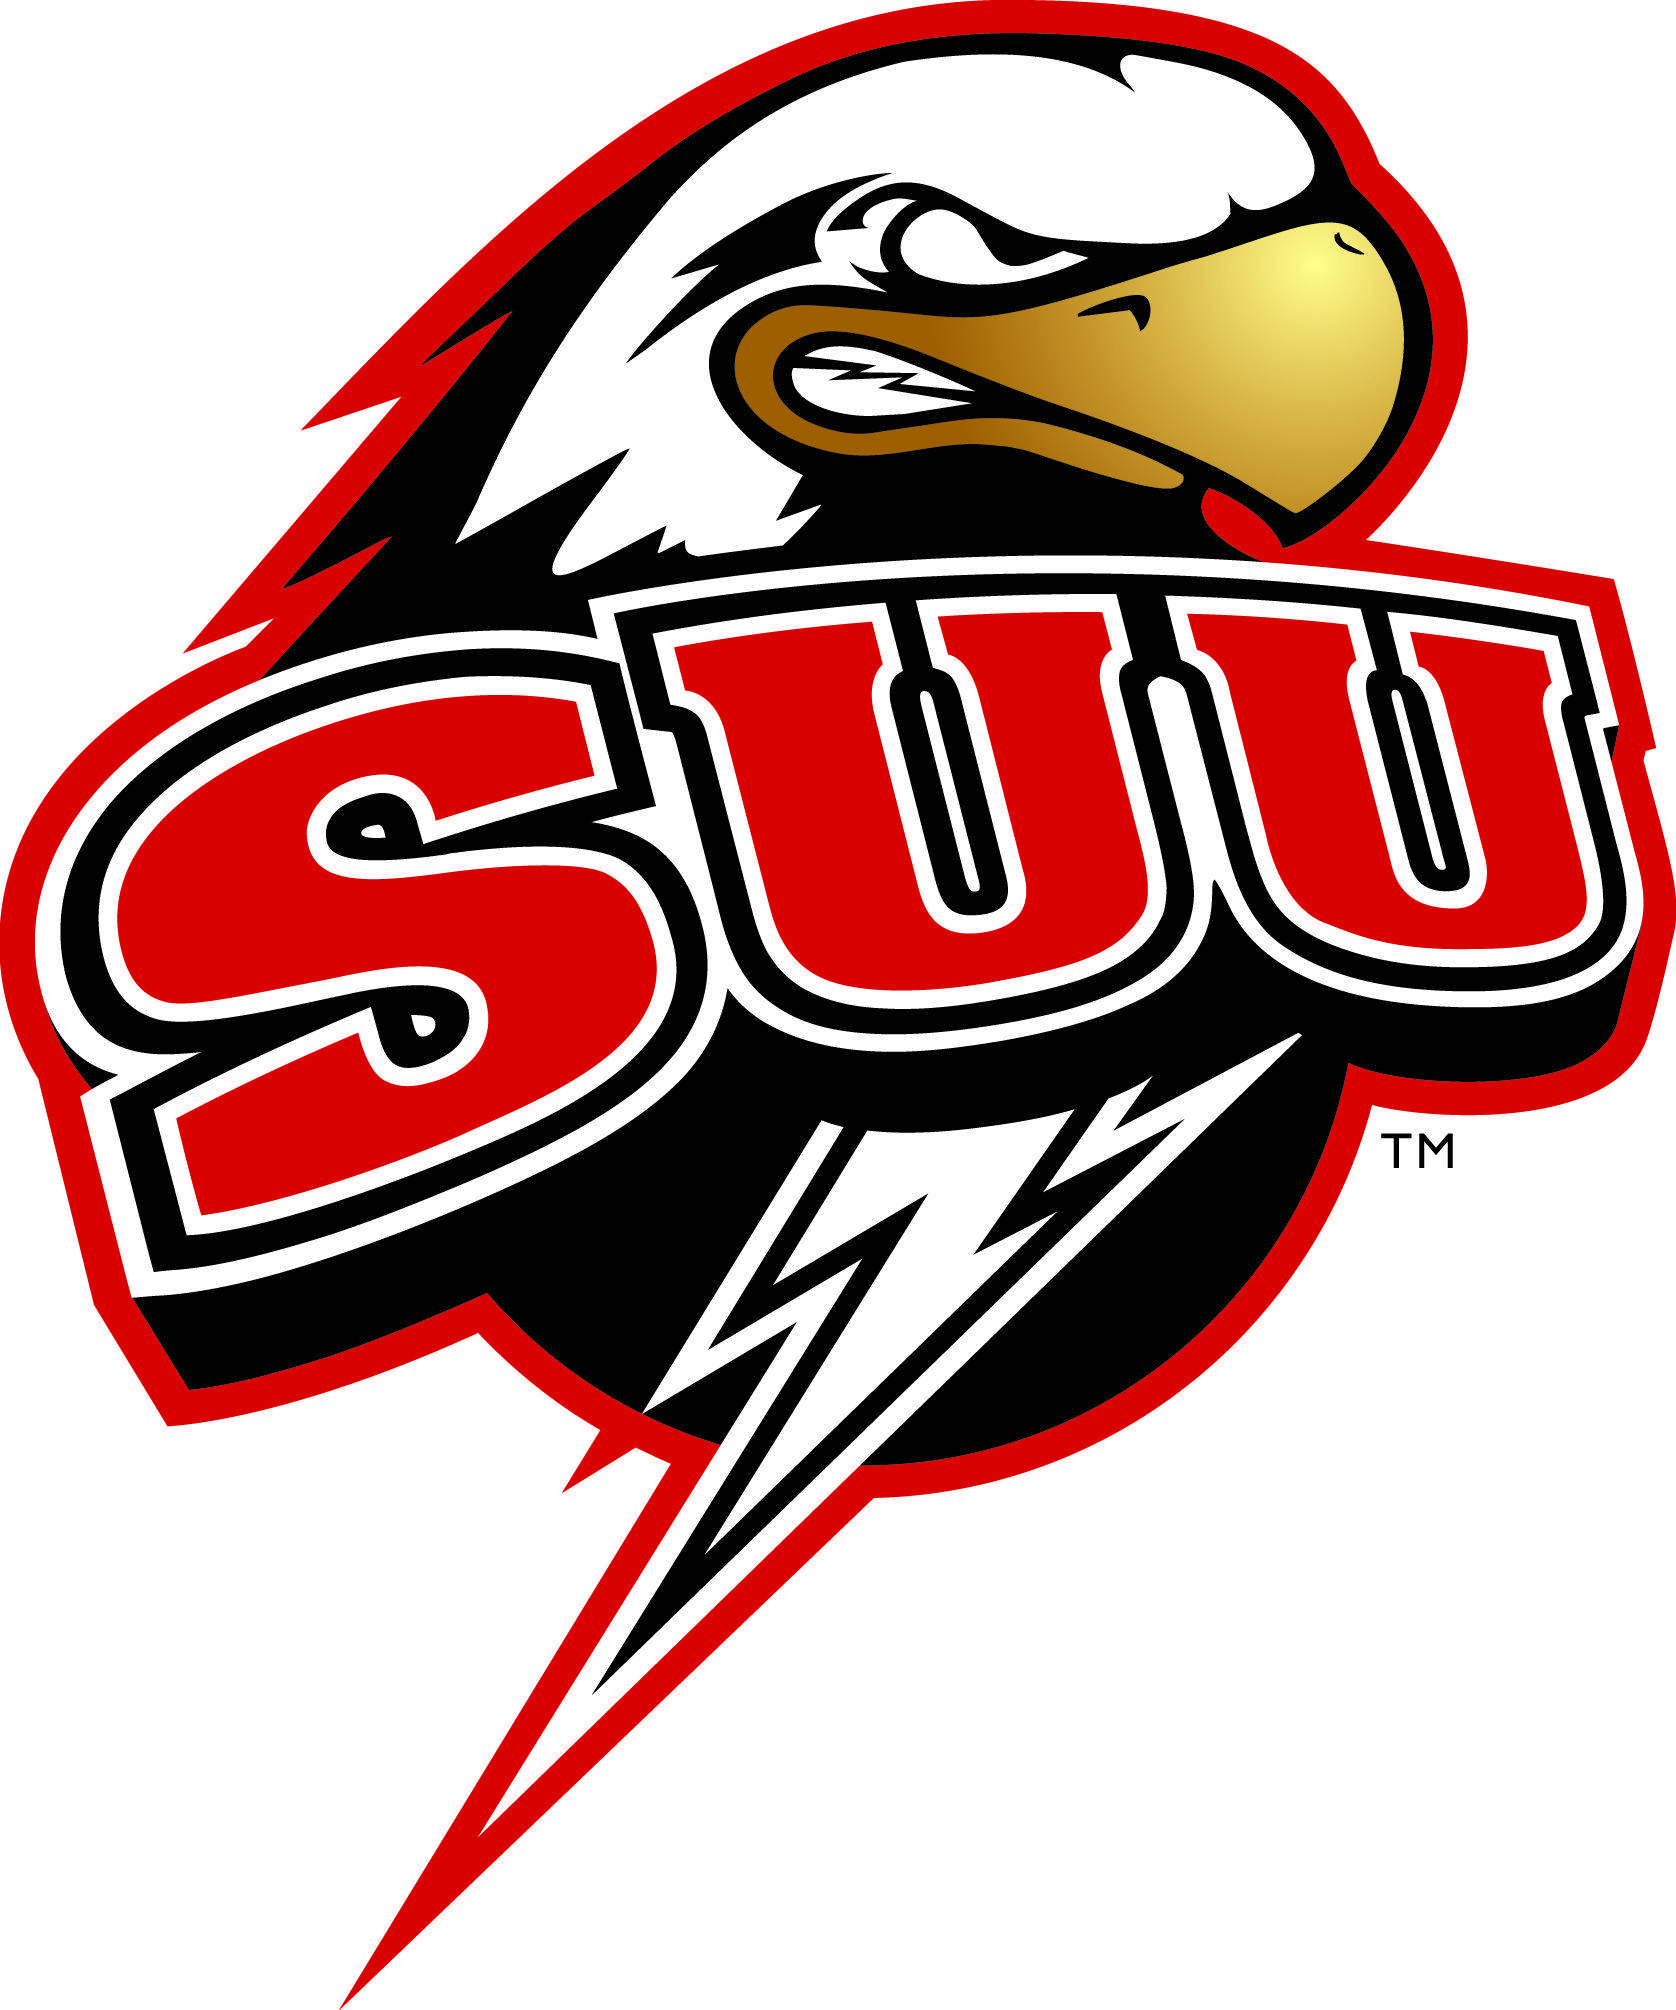 University of Utah Football Logo - Southern Utah University. Big Sky Team Logos. Utah, University